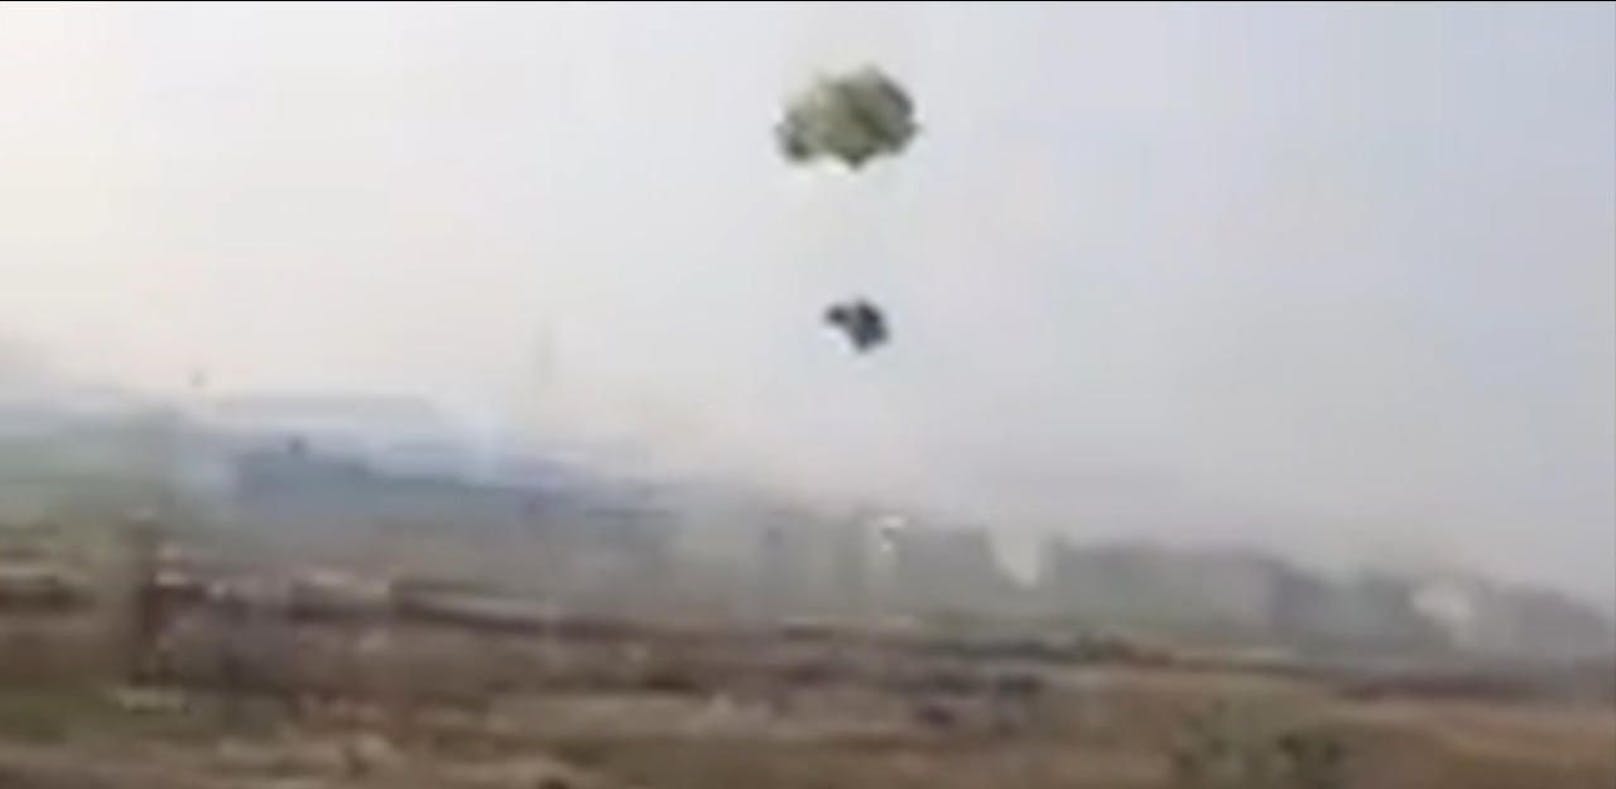 Draufgänger-Huhn springt mit Fallschirm aus Flieger